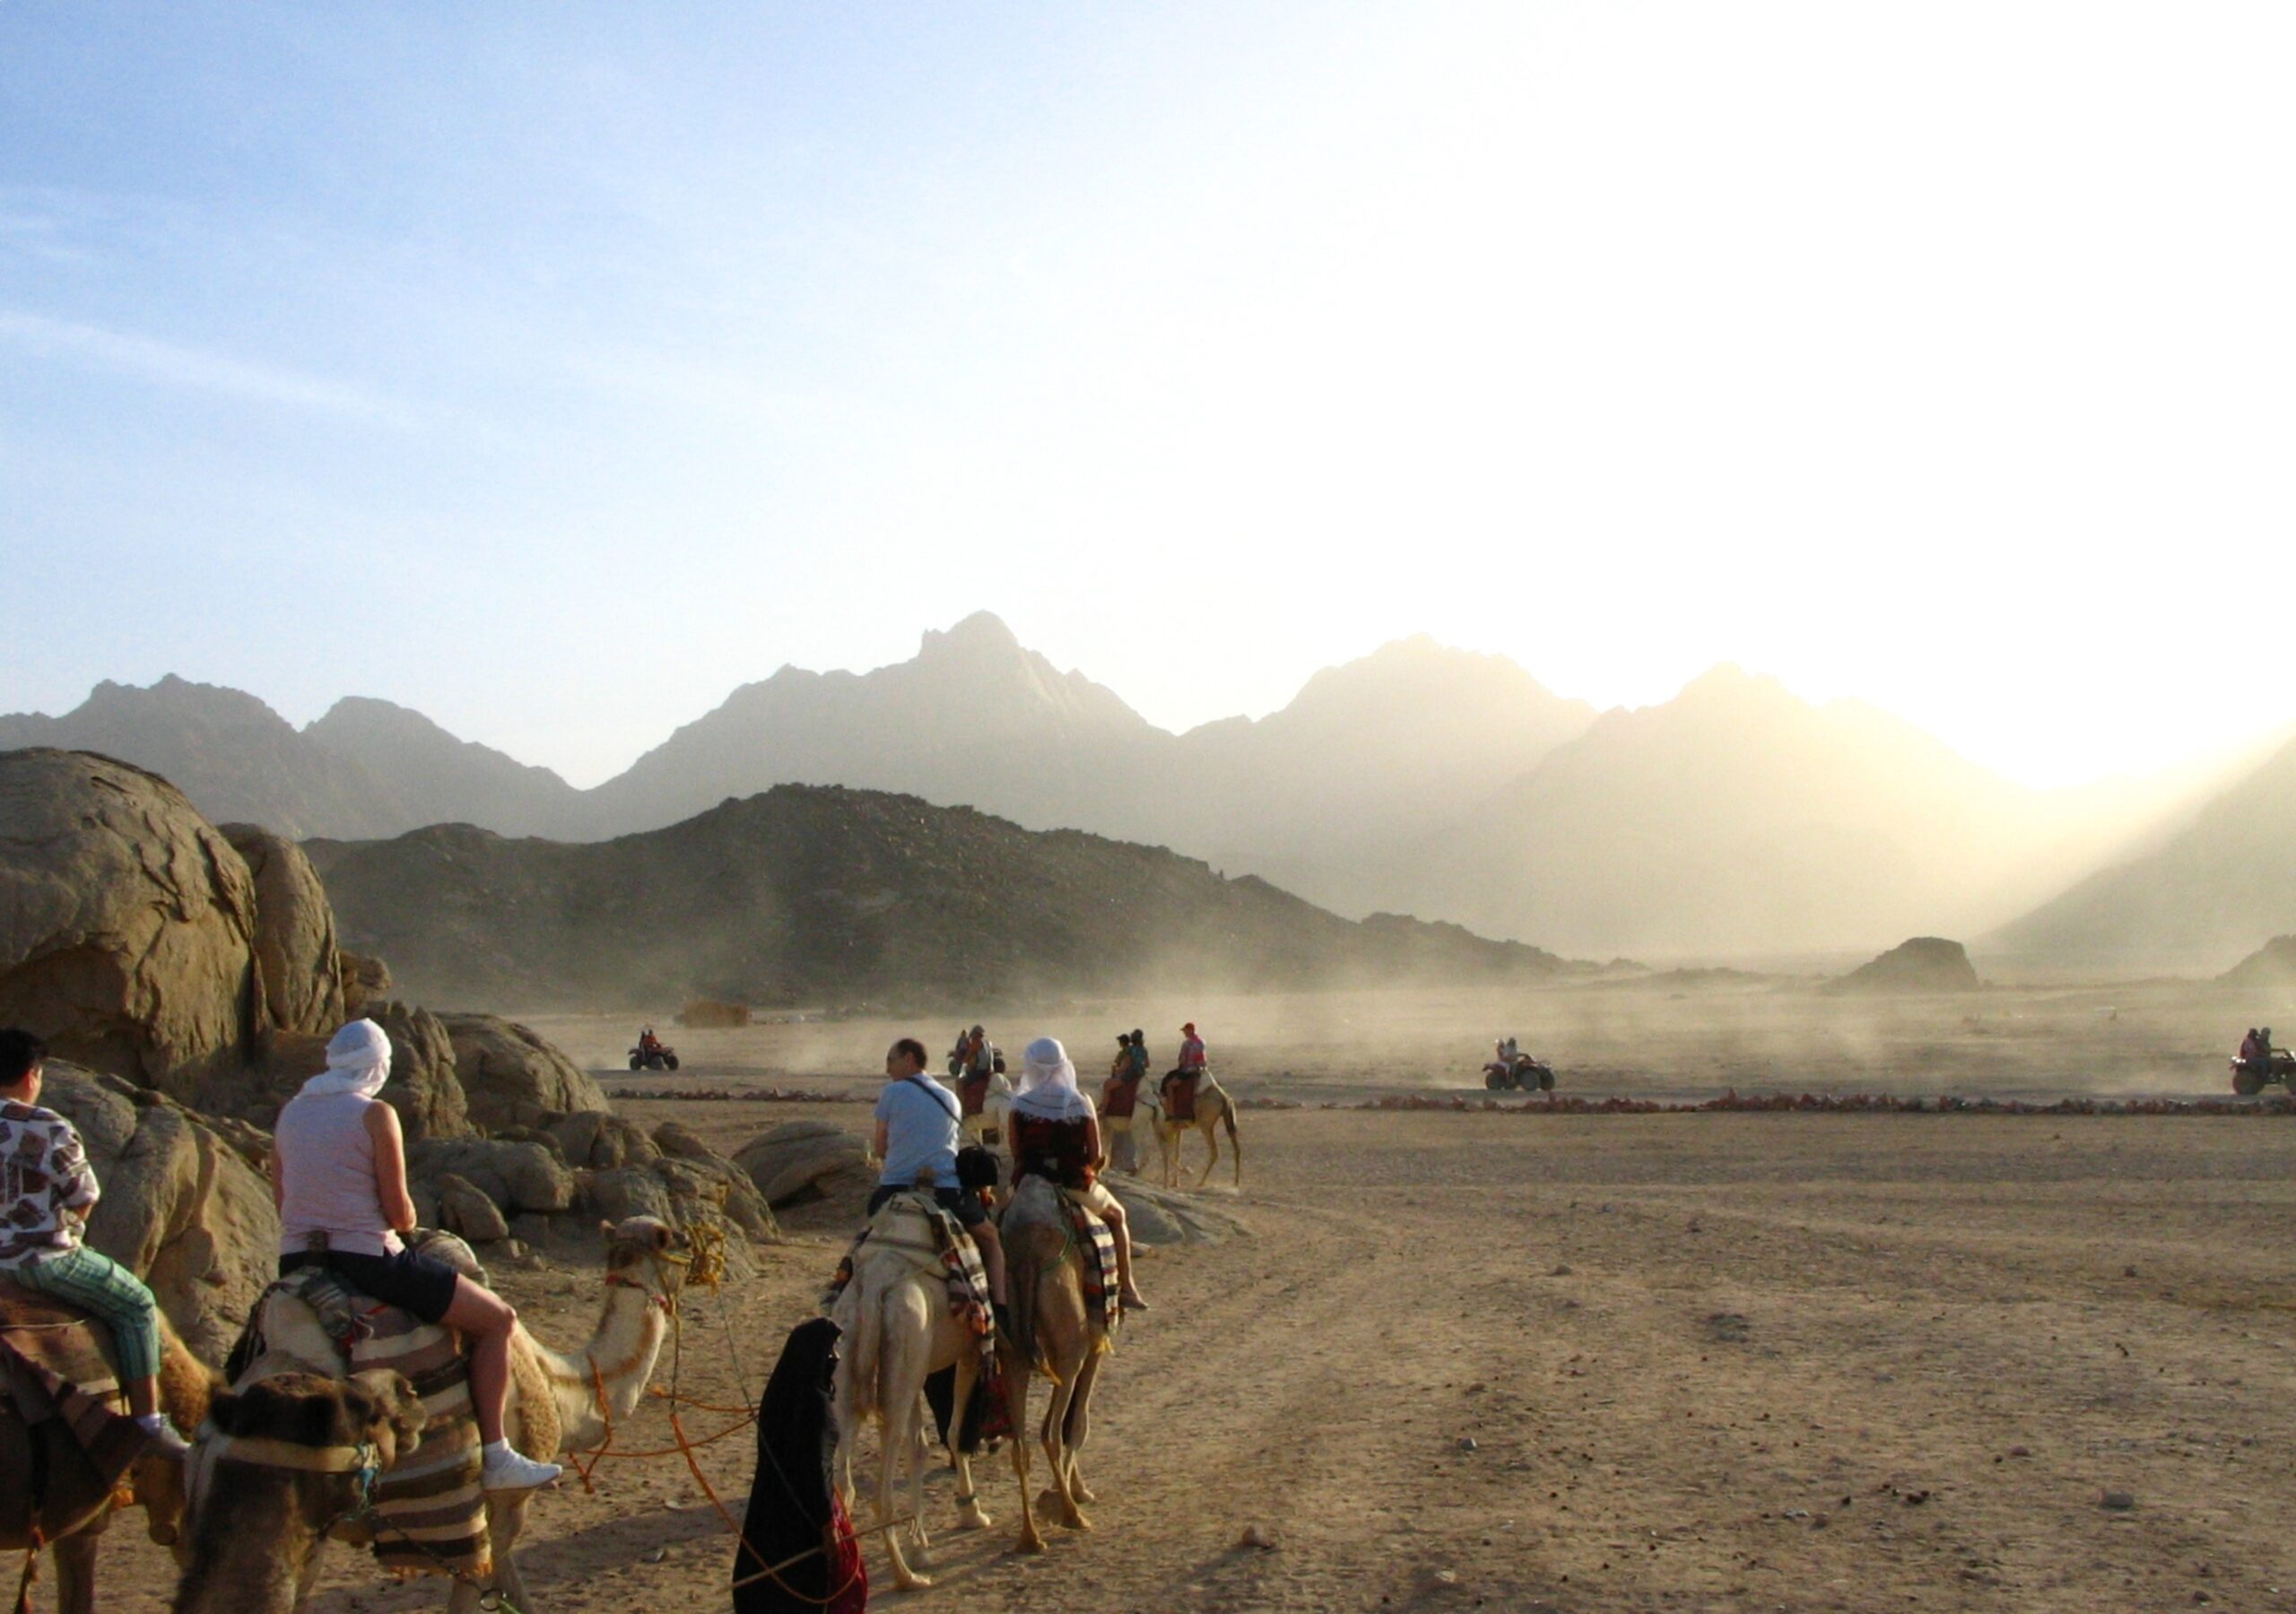 Aproximativ 96% din suprafața totală a Egiptului este deșert. Sursa foto: dreamstime